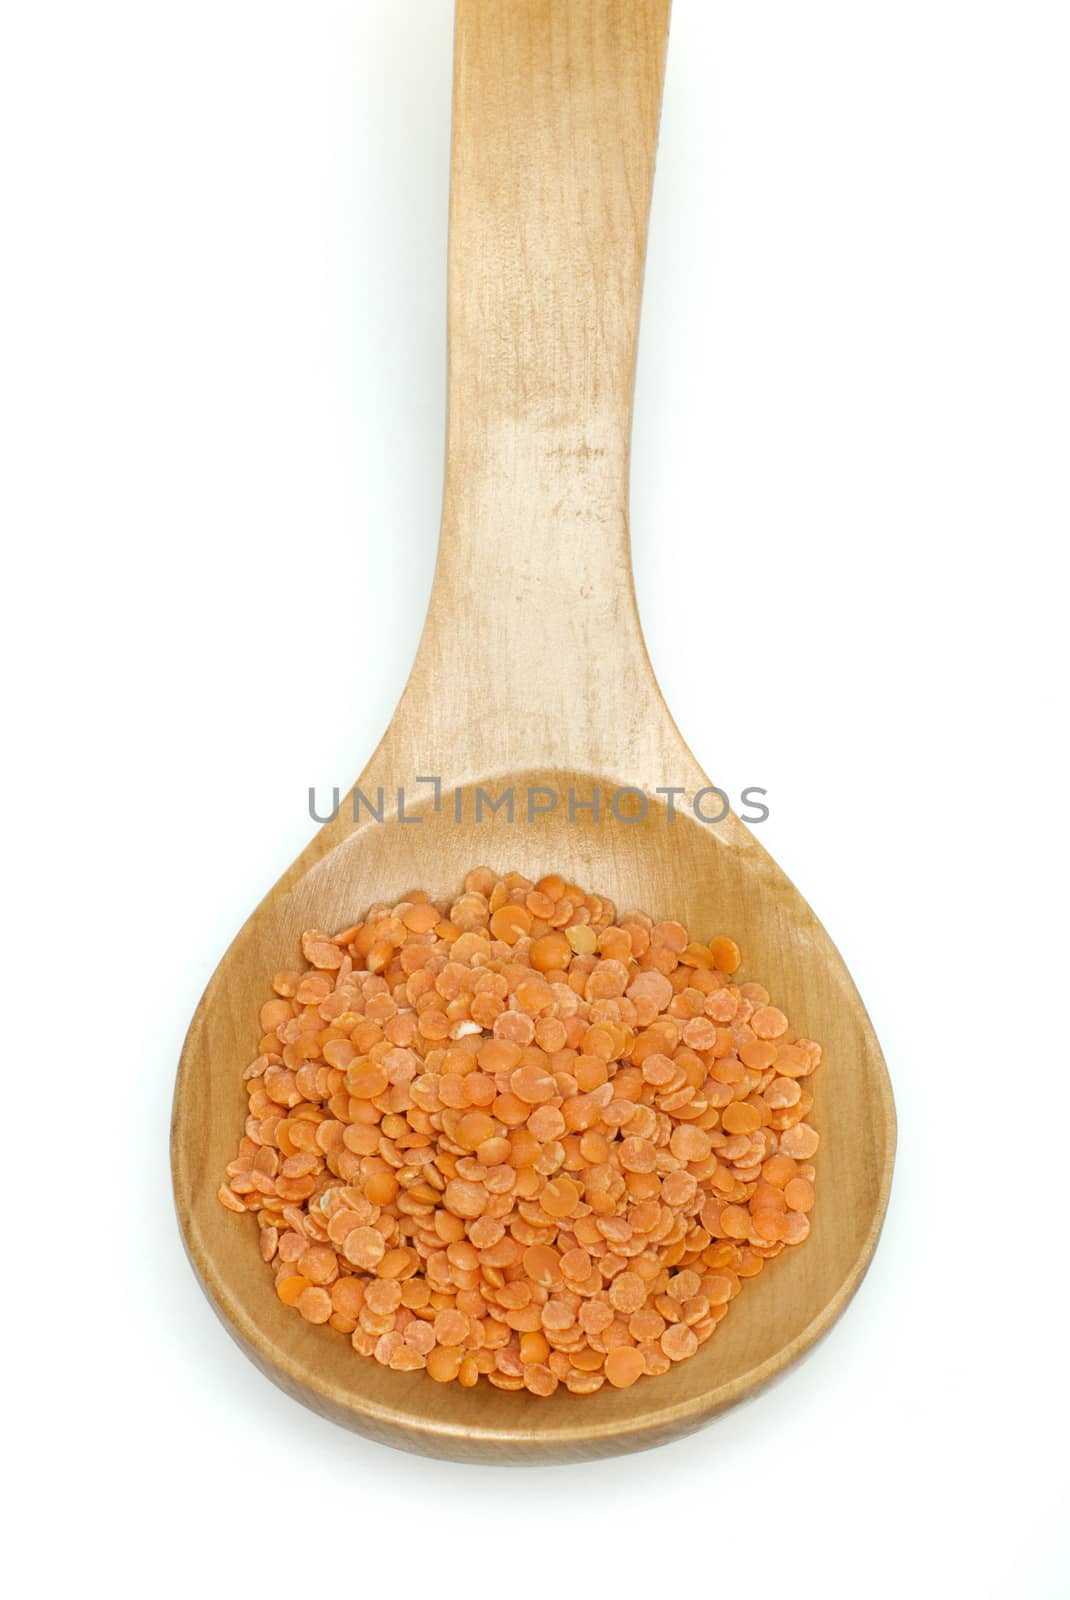 Lentil split in wooden spoon on white background